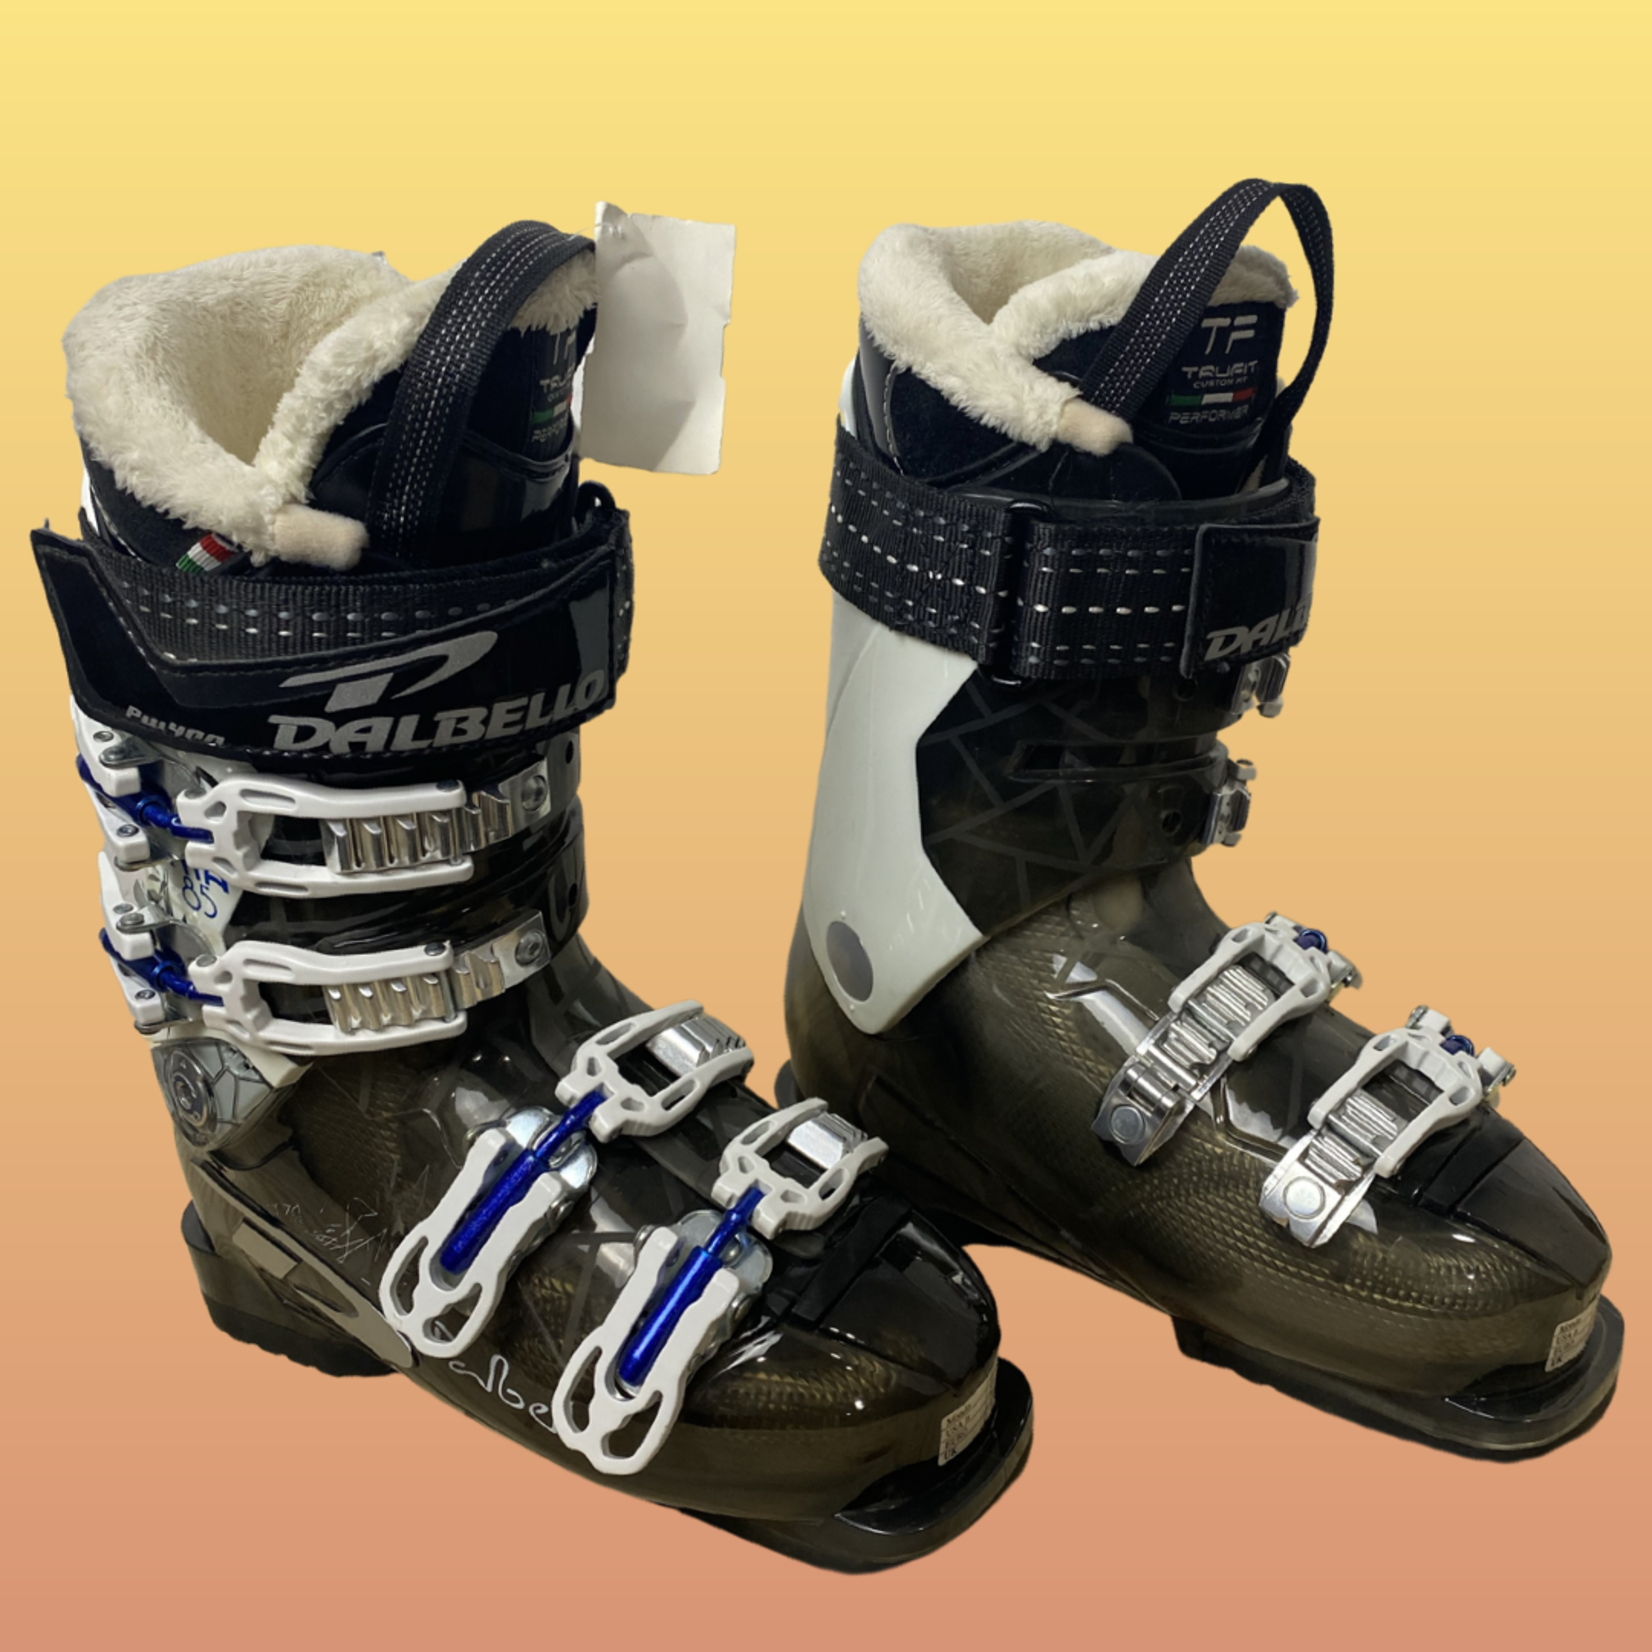 Dalbello NEW Dalbello Synta 85 Ski Boots